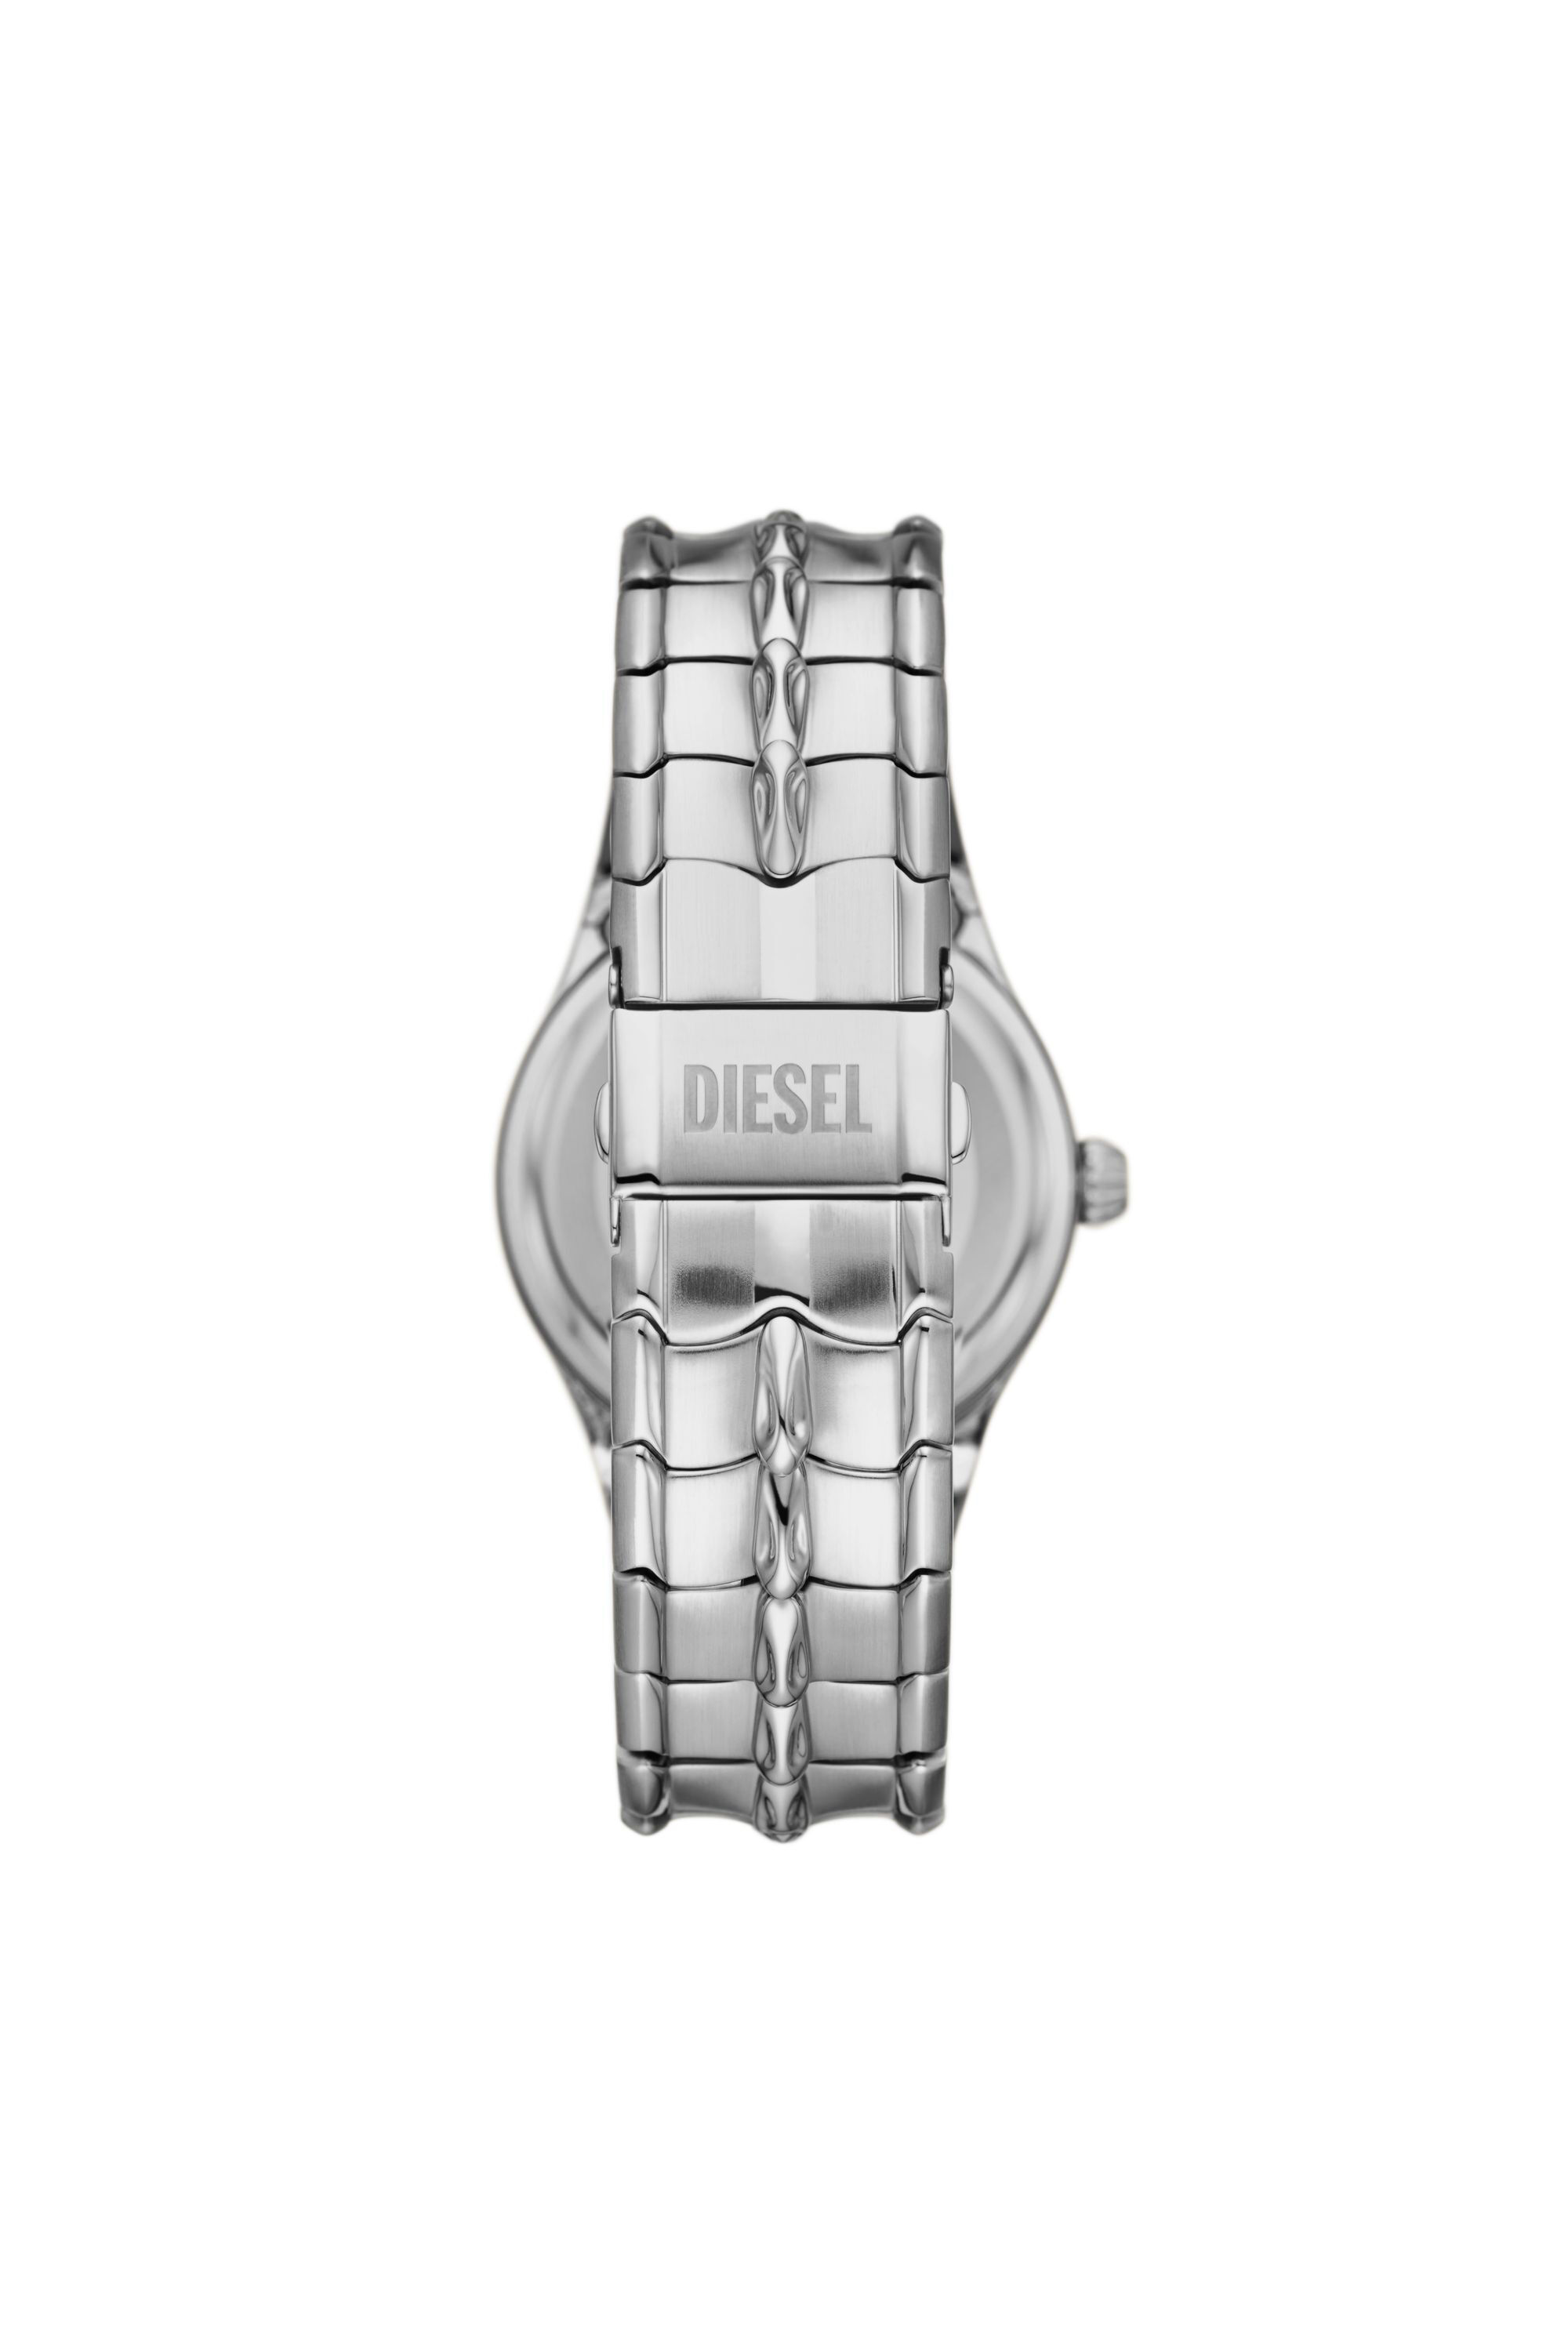 Diesel - DZ2185, Silber - Image 2